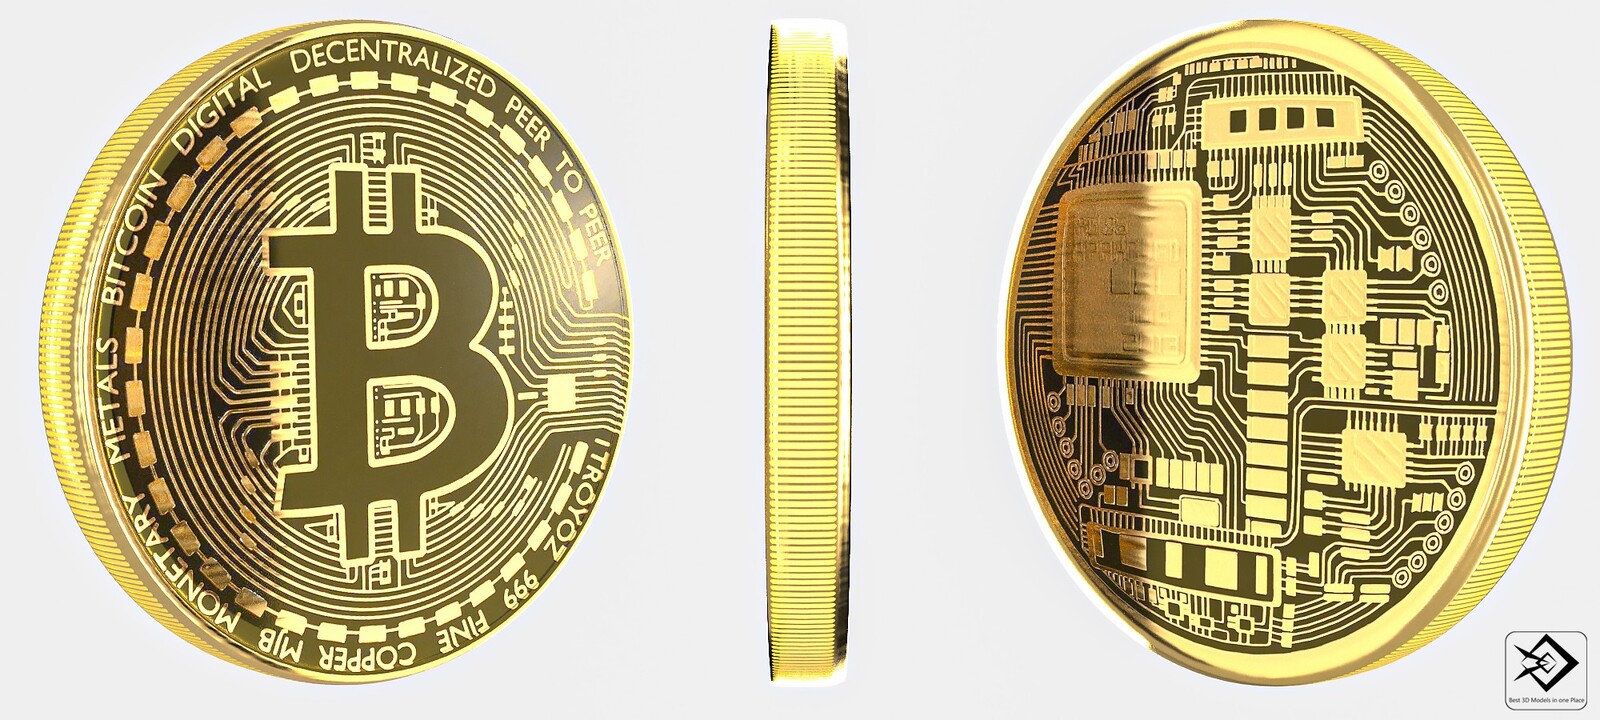 bitcoins kopen met bitcoins free